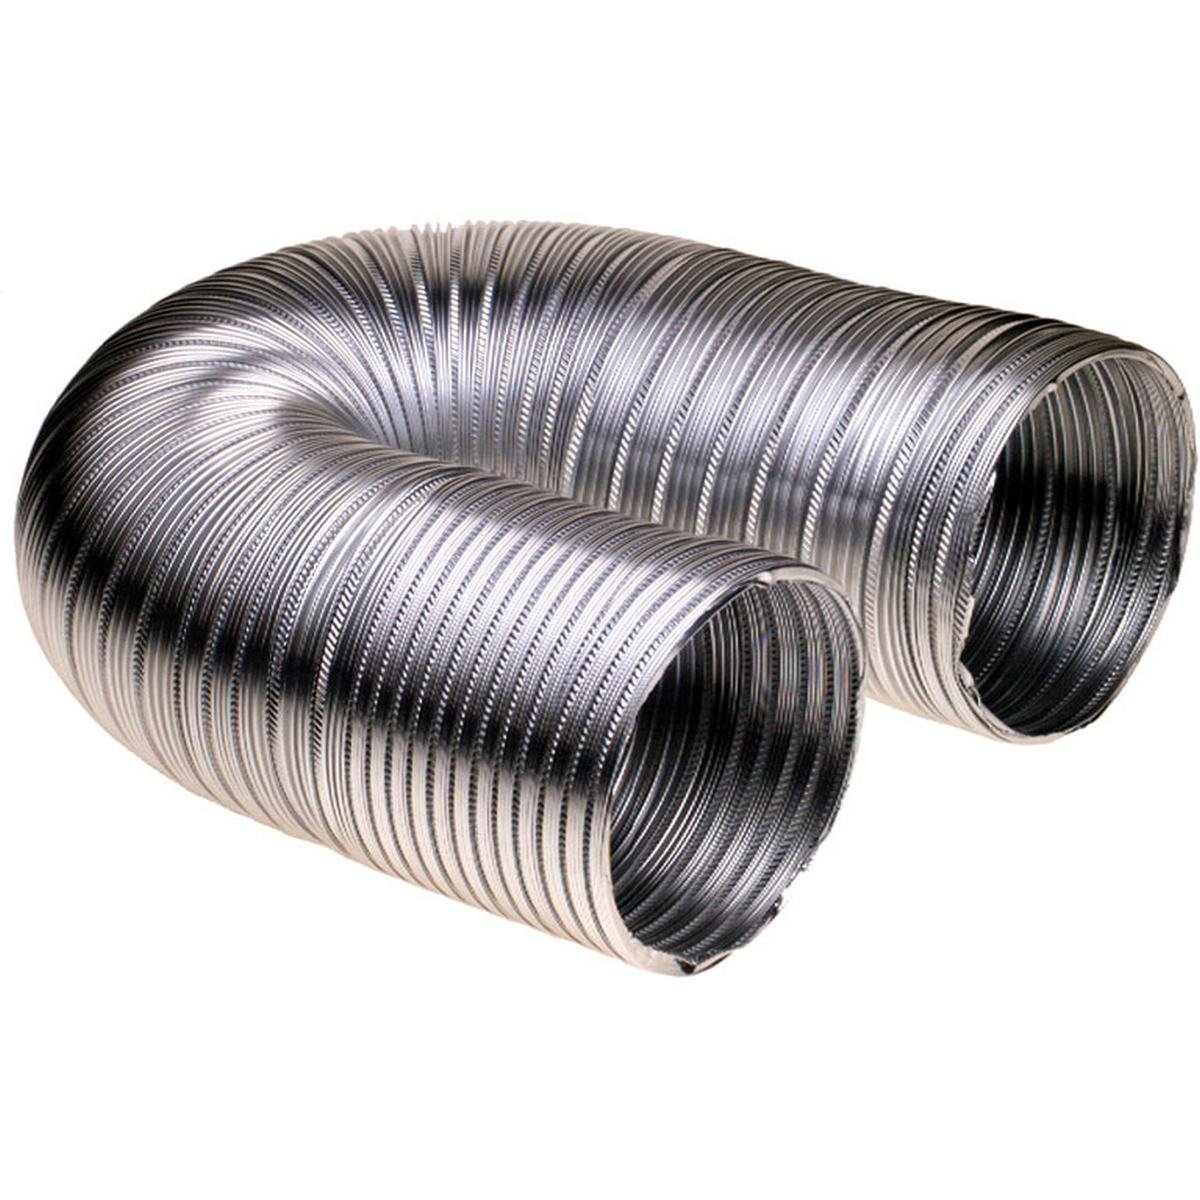 Ventilasjonsslange i aluminium Ø152 mm. 1,5 meter